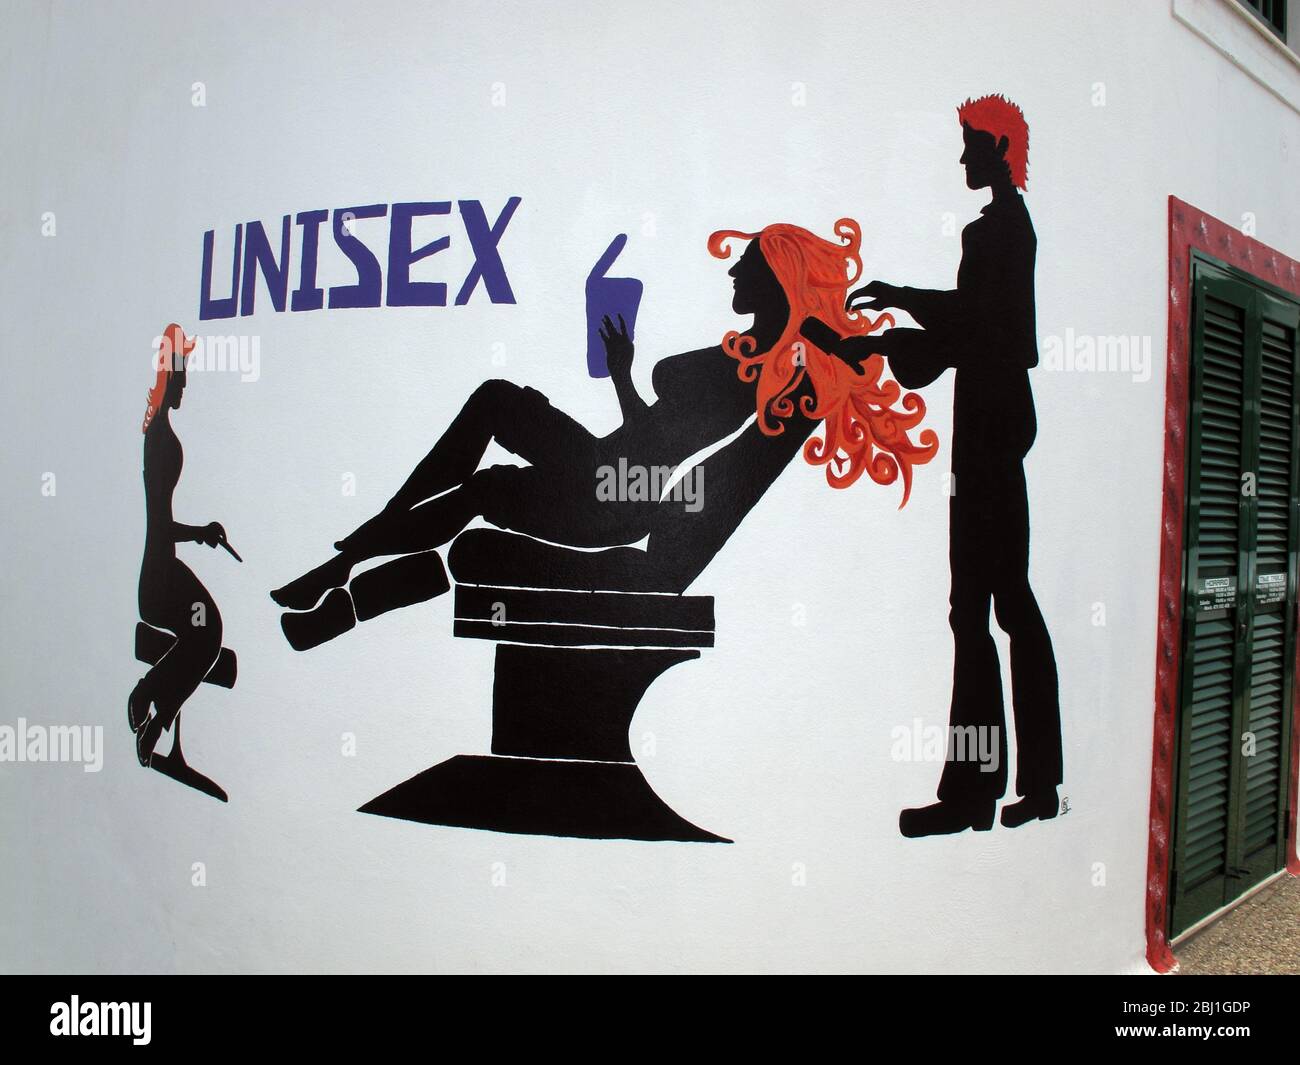 Unisex-Friseursalon, Unisex-Friseursschild, an der Wand gemalt, eine Frau im Stuhl mit einem Haarschnitt Stockfoto